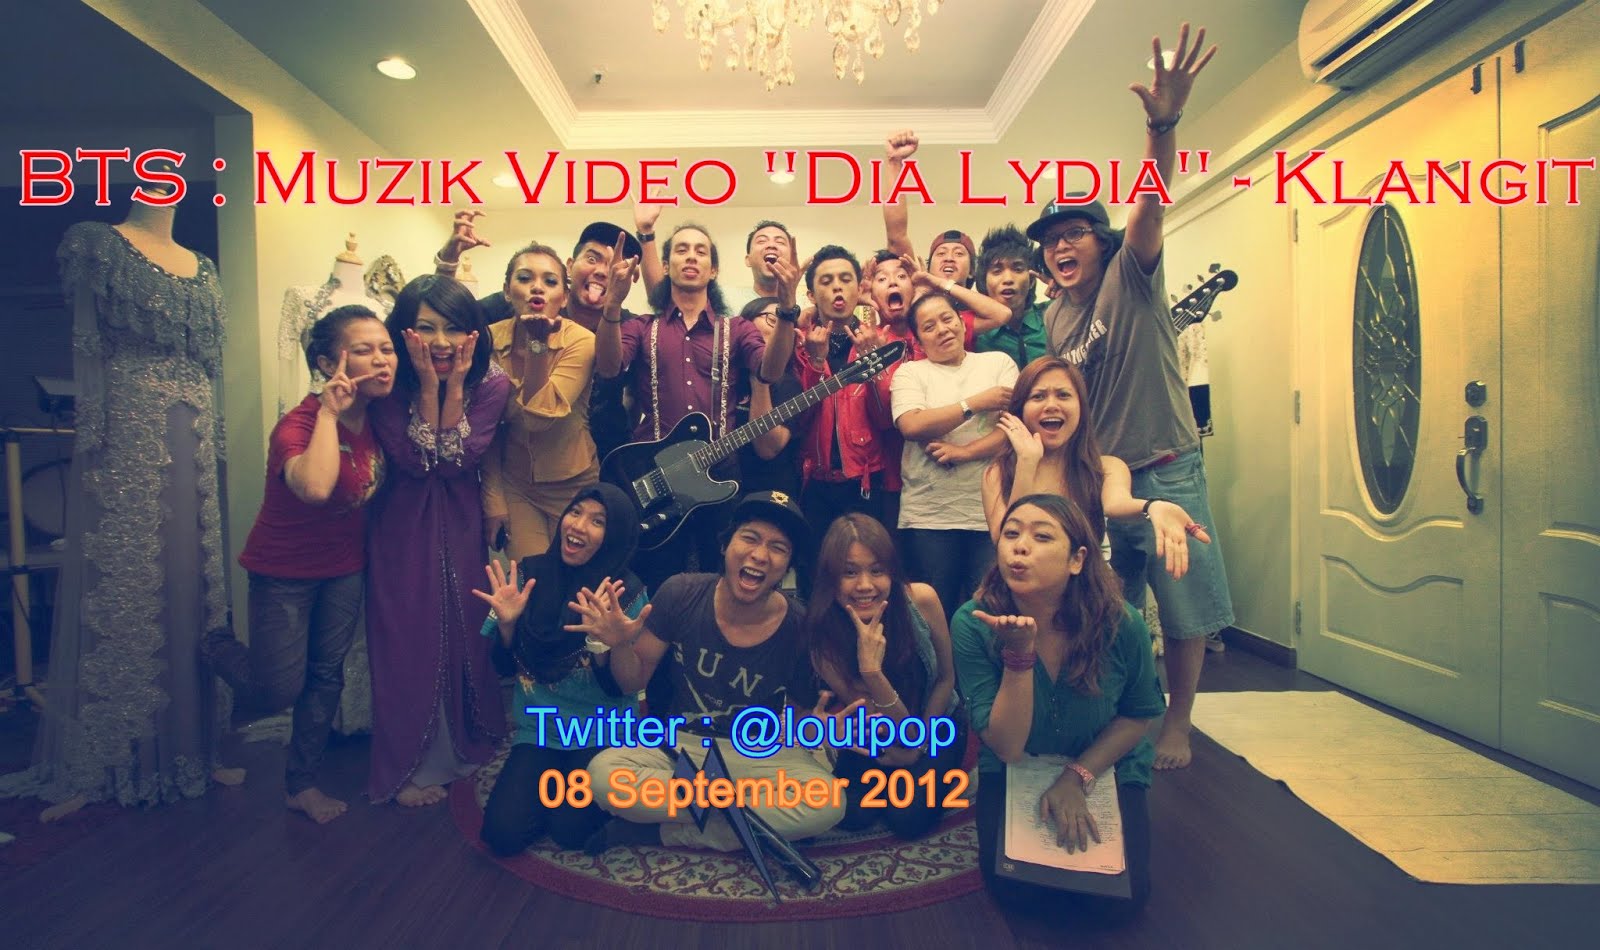 BTS : Muzik Video "Dia Lydia" - Klangit